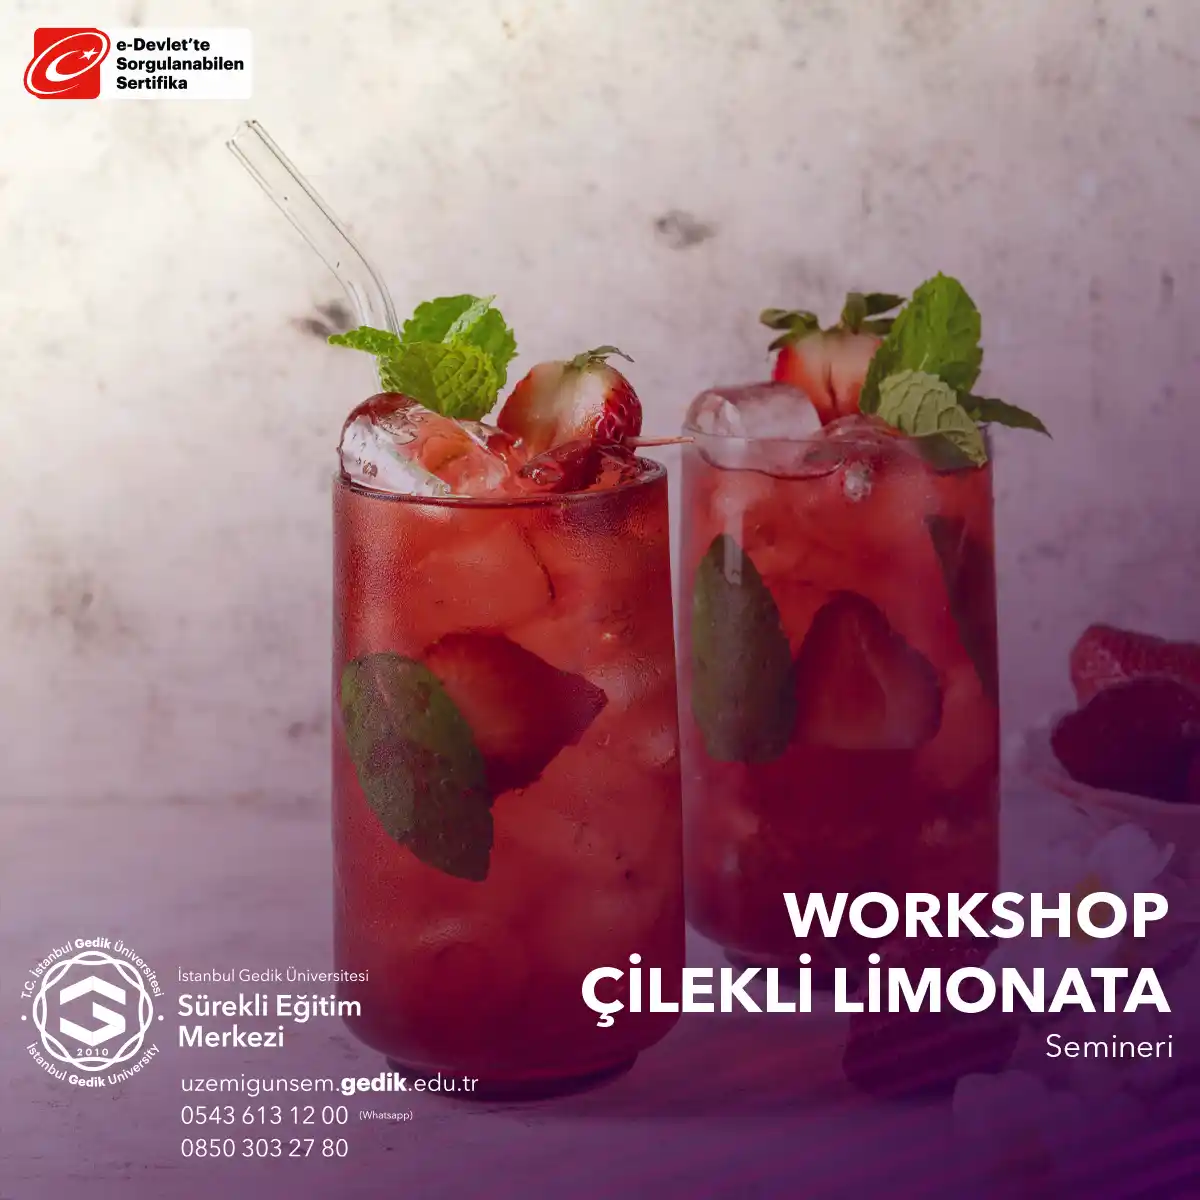 "Çilekli Limonata Workshop" katılımcılara serinletici bir içecek olan çilekli limonata yapmayı öğretmeyi amaçlayan seminerdir.